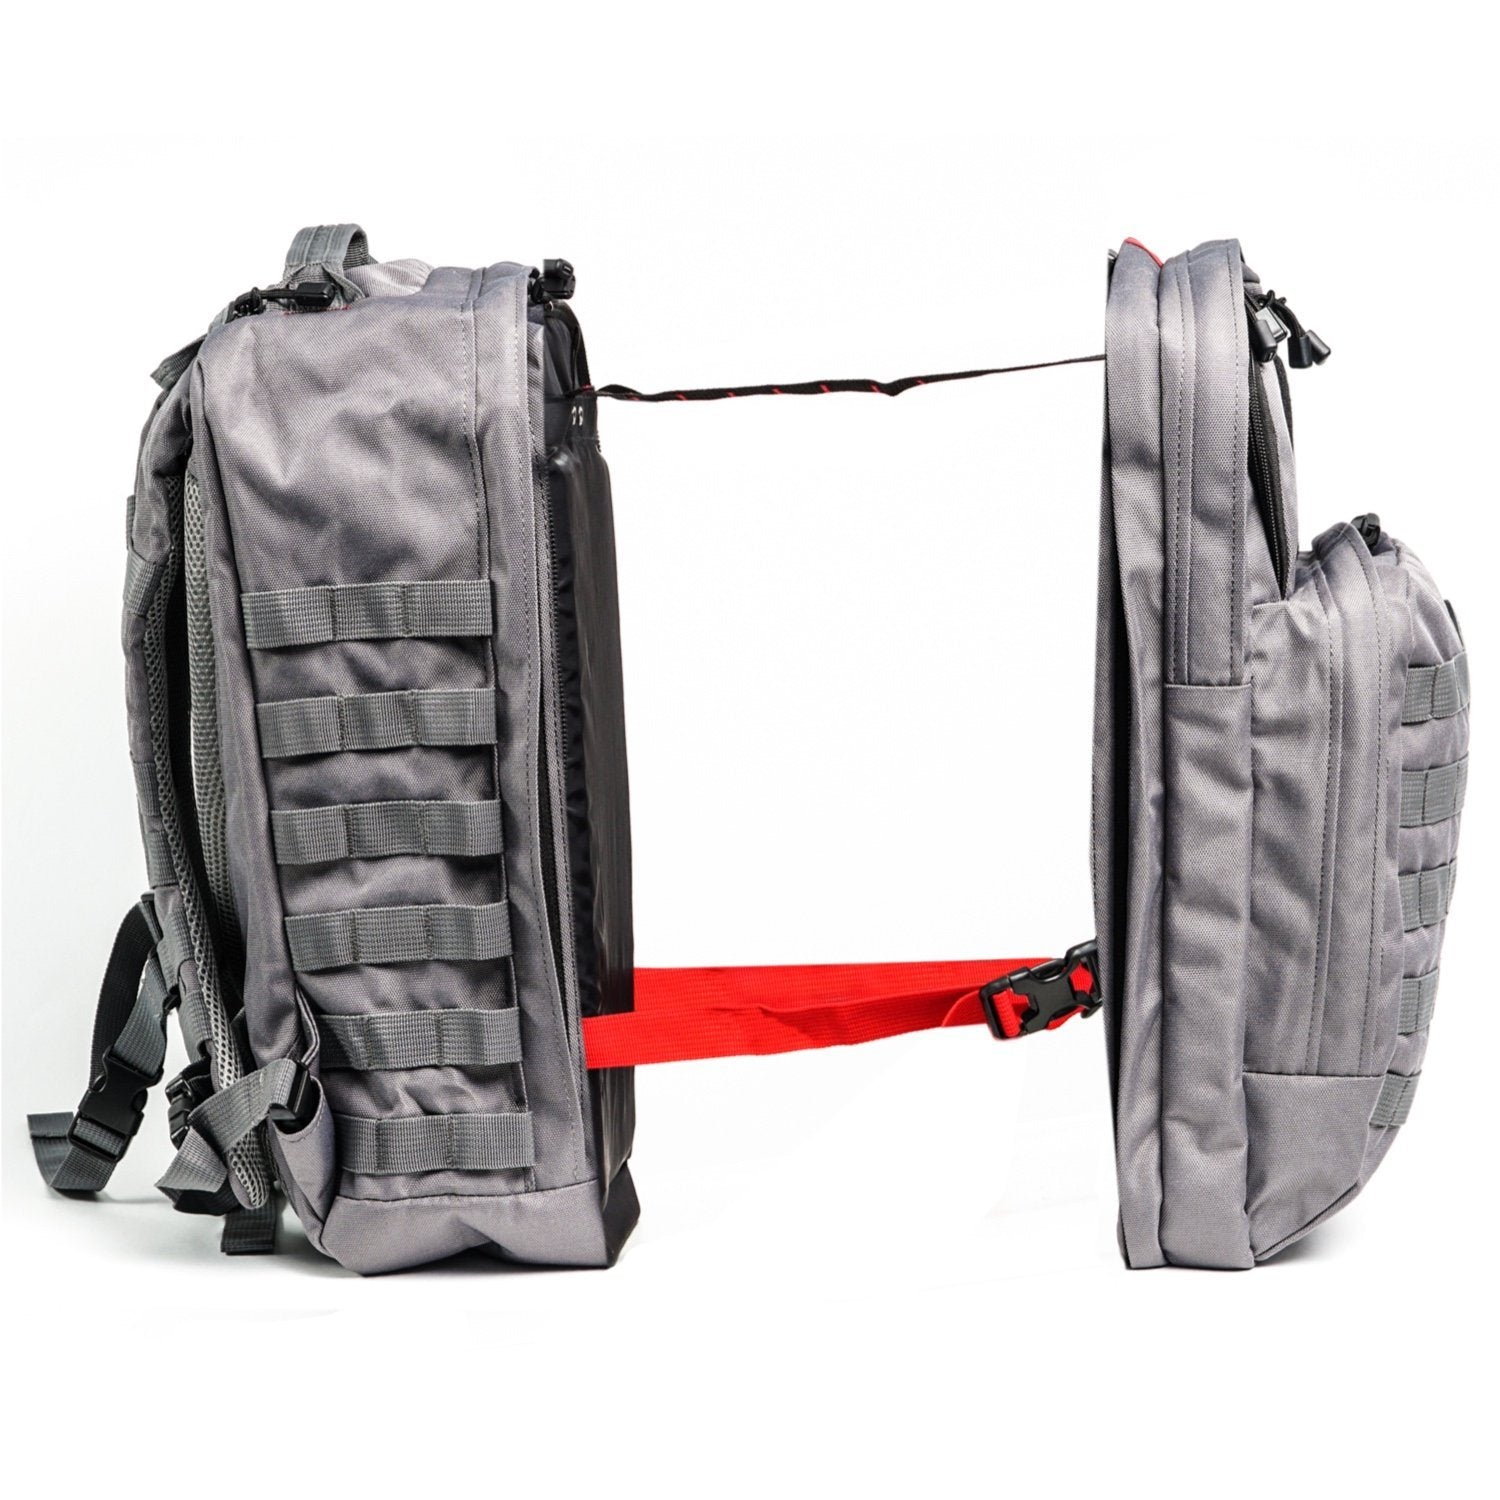 https://www.leatherbackgear.com/cdn/shop/products/tactical-one-bulletproof-backpack-leatherback-gear-459130_5000x.jpg?v=1616053942